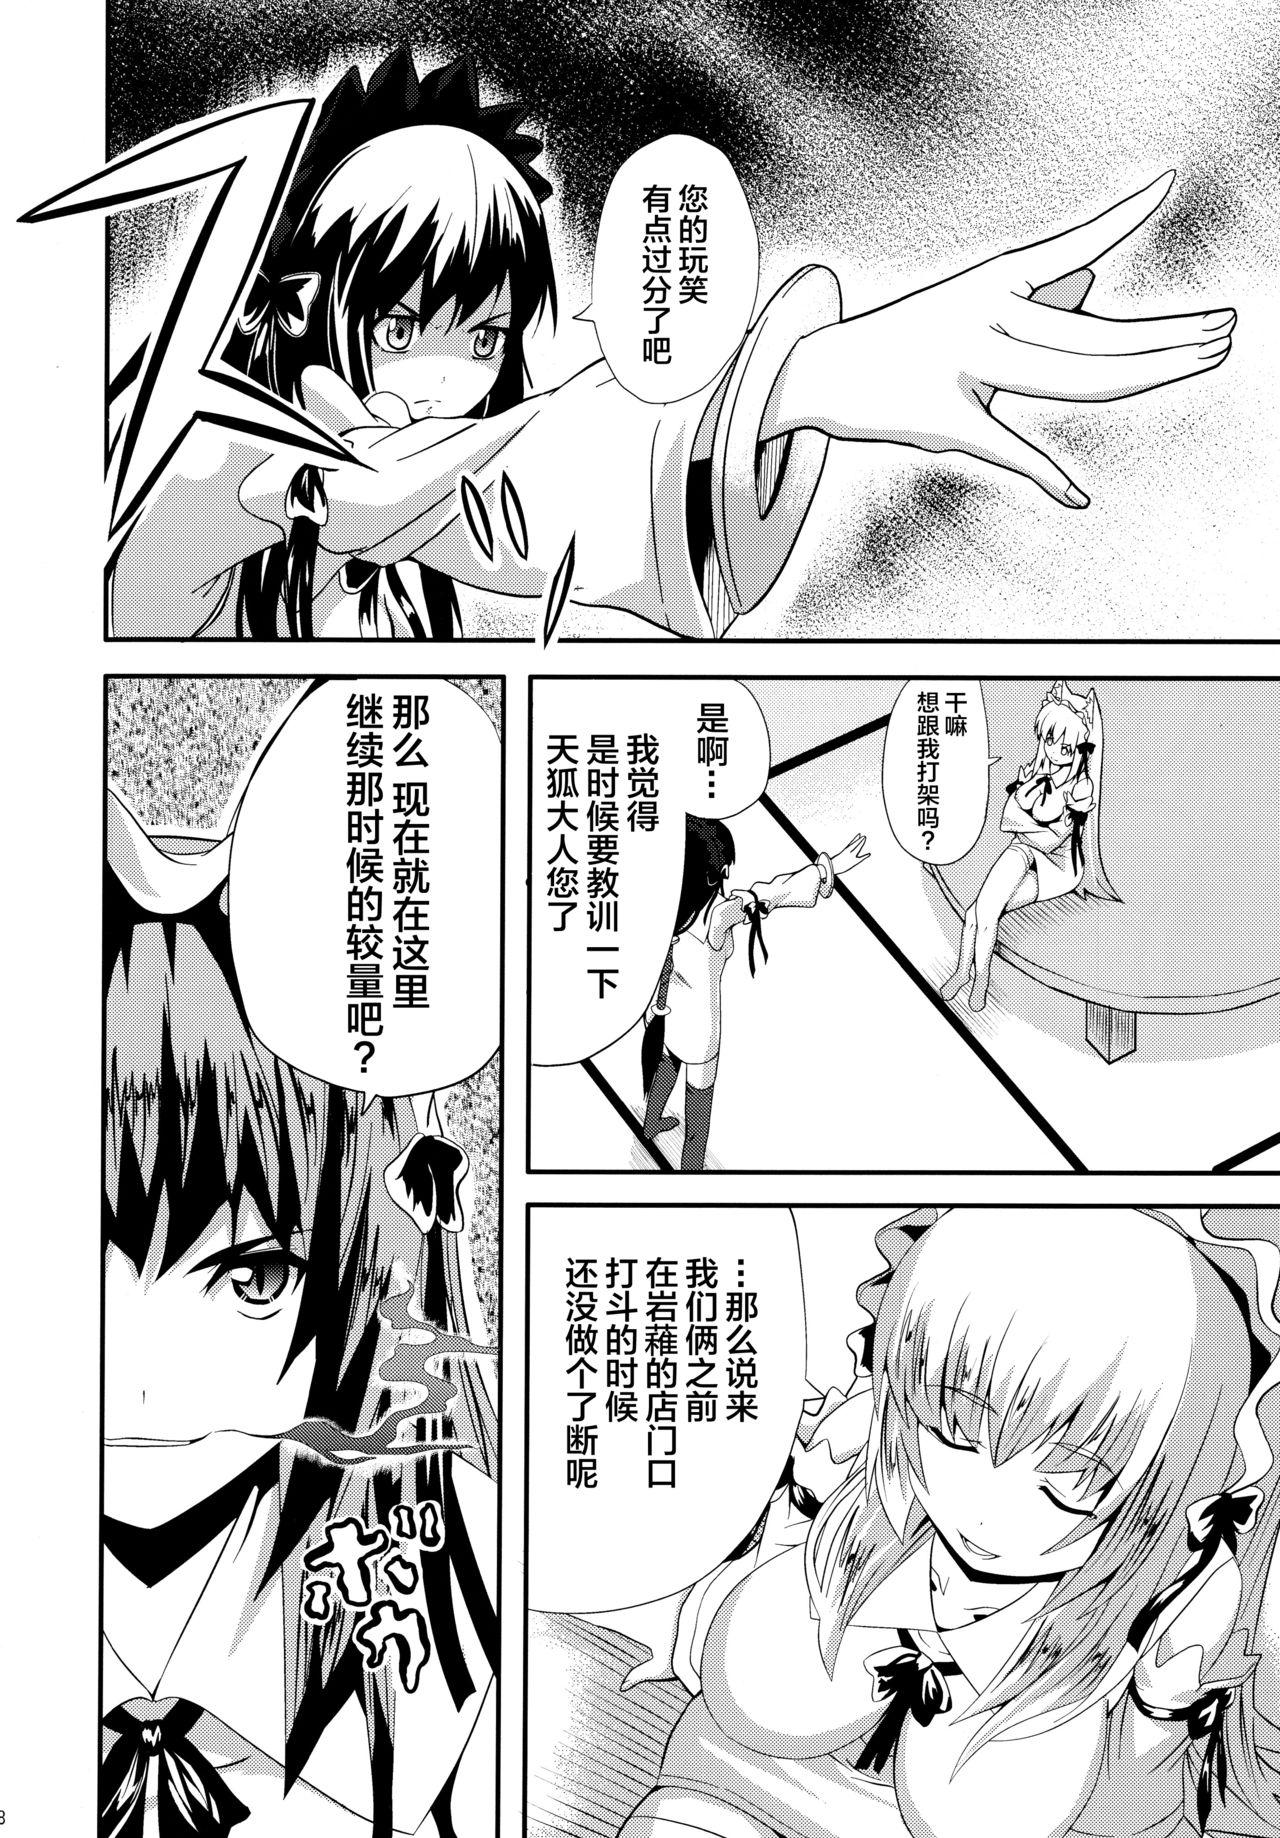 Leather Hare, Tokidoki Oinari-sama 4 - Wagaya no oinari sama Milfsex - Page 8